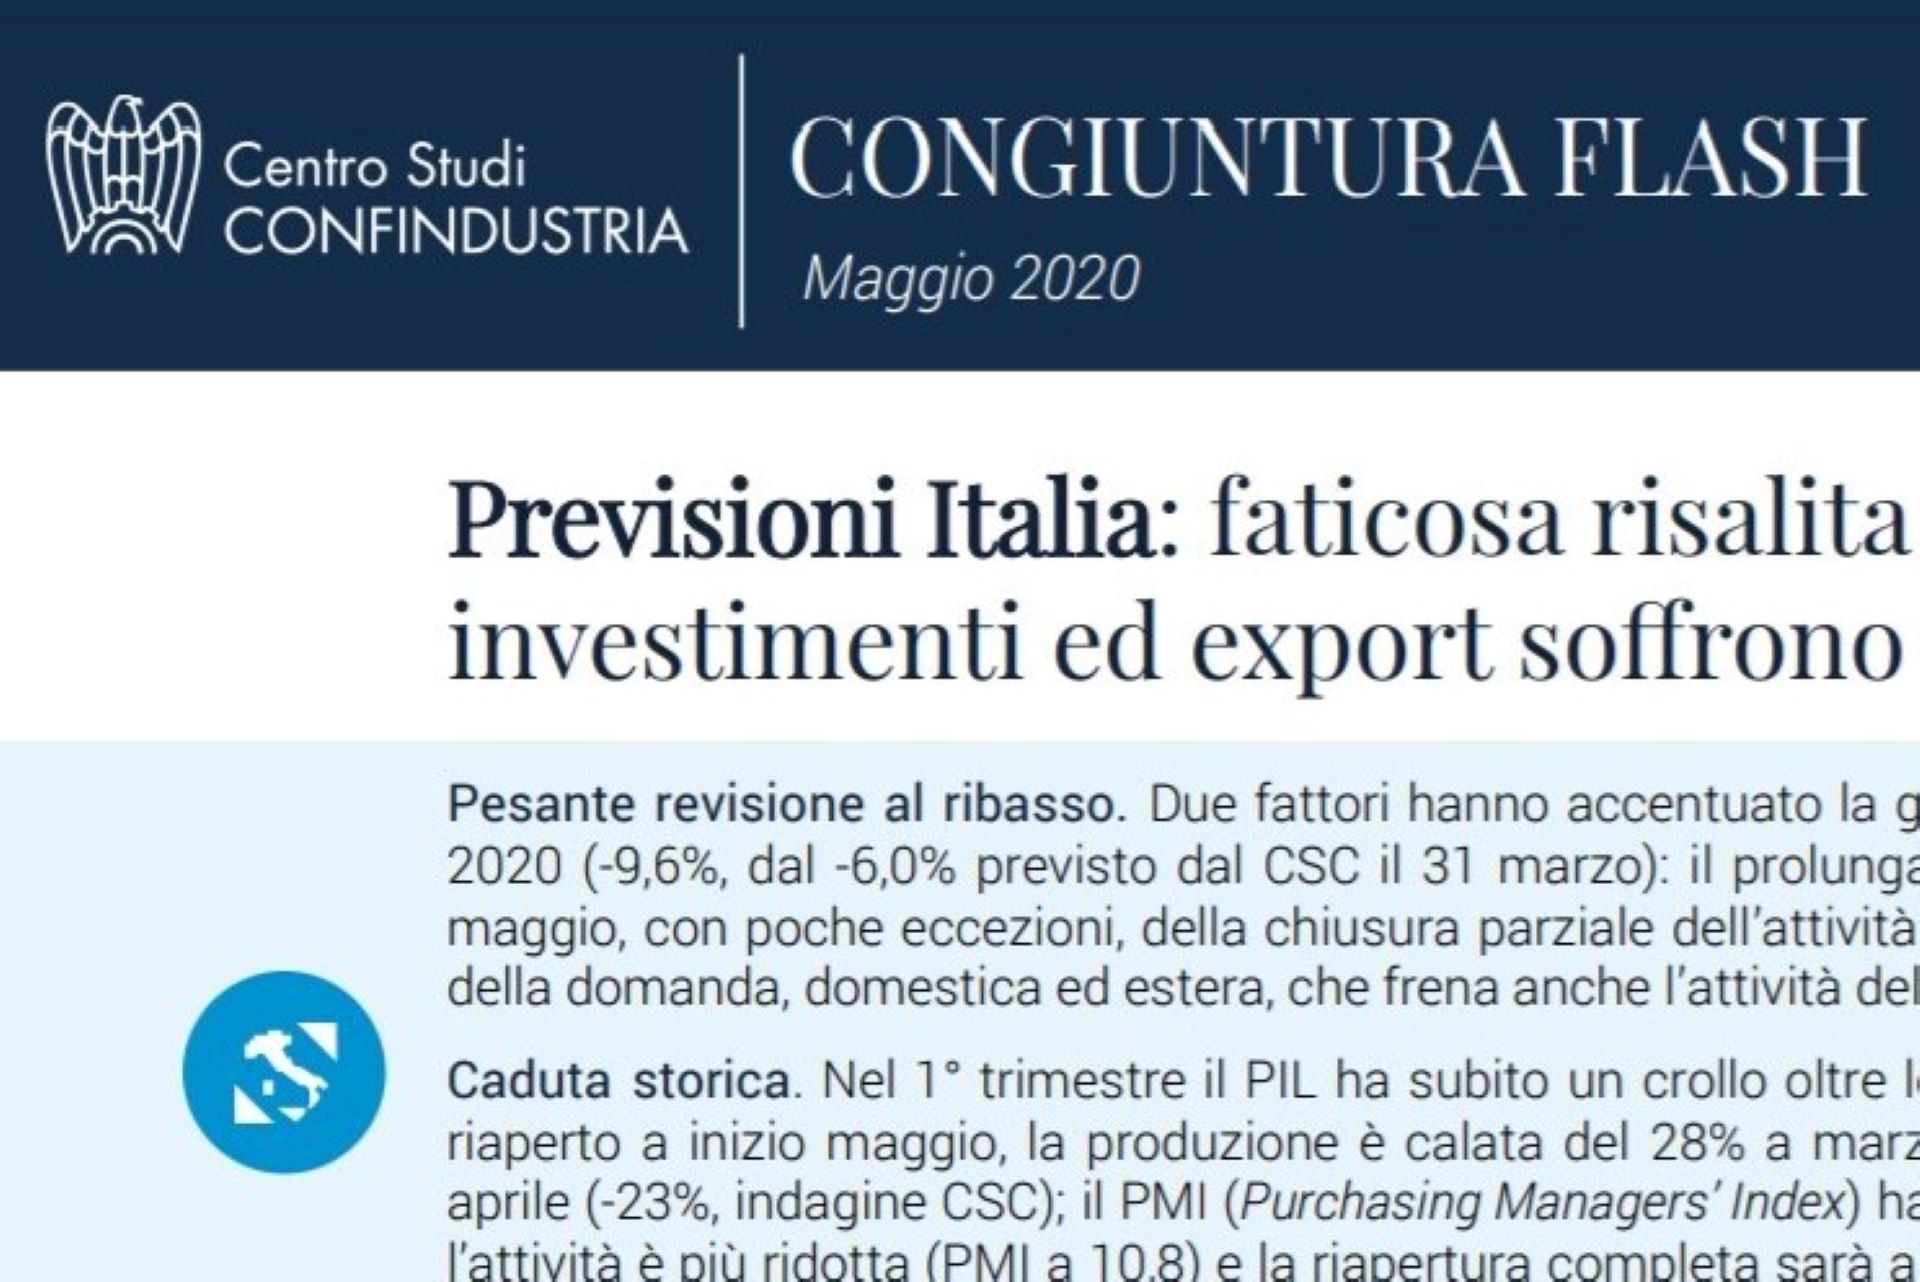 Centro Studi Confindustria: Previsioni per l'Italia 2020/21